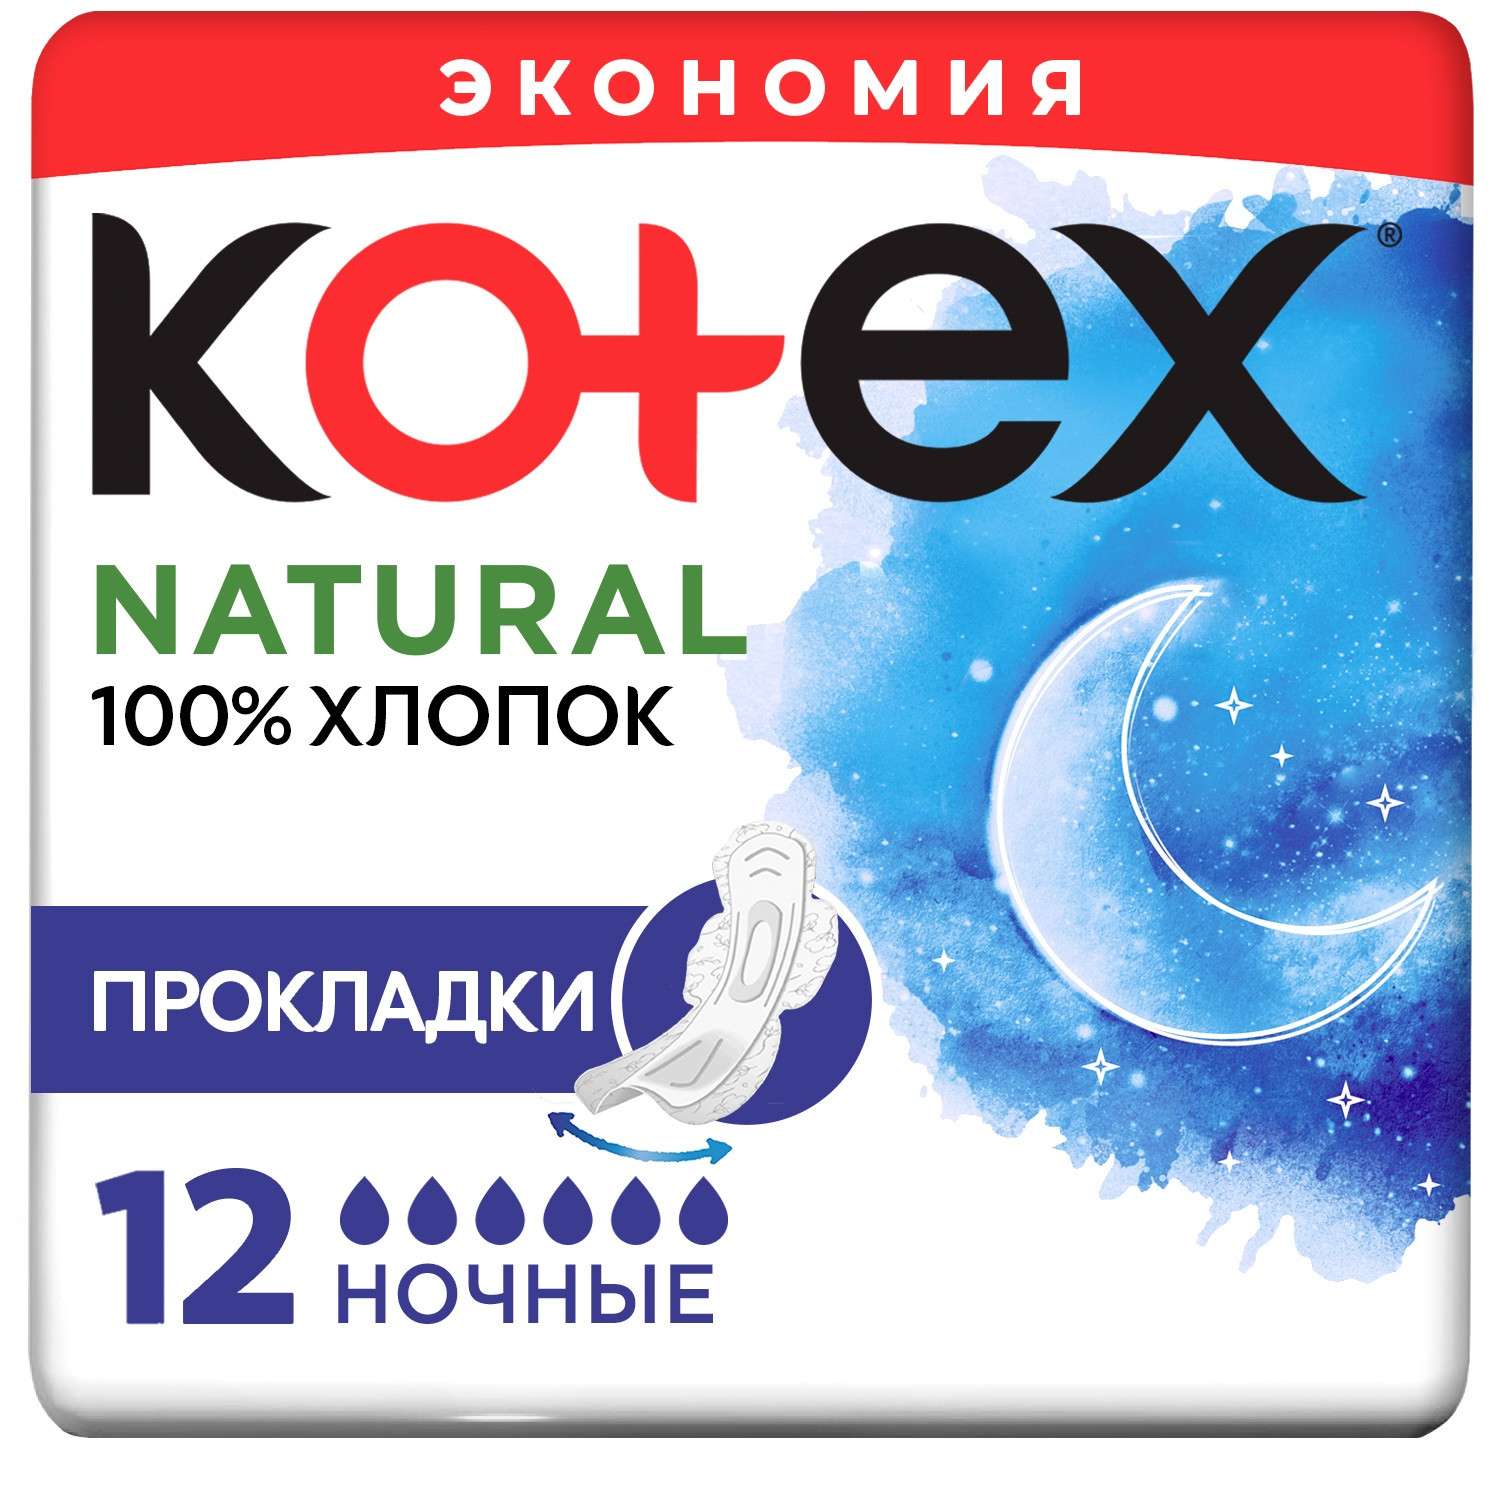 Прокладки KOTEX Natural ночные 12шт - фото 2